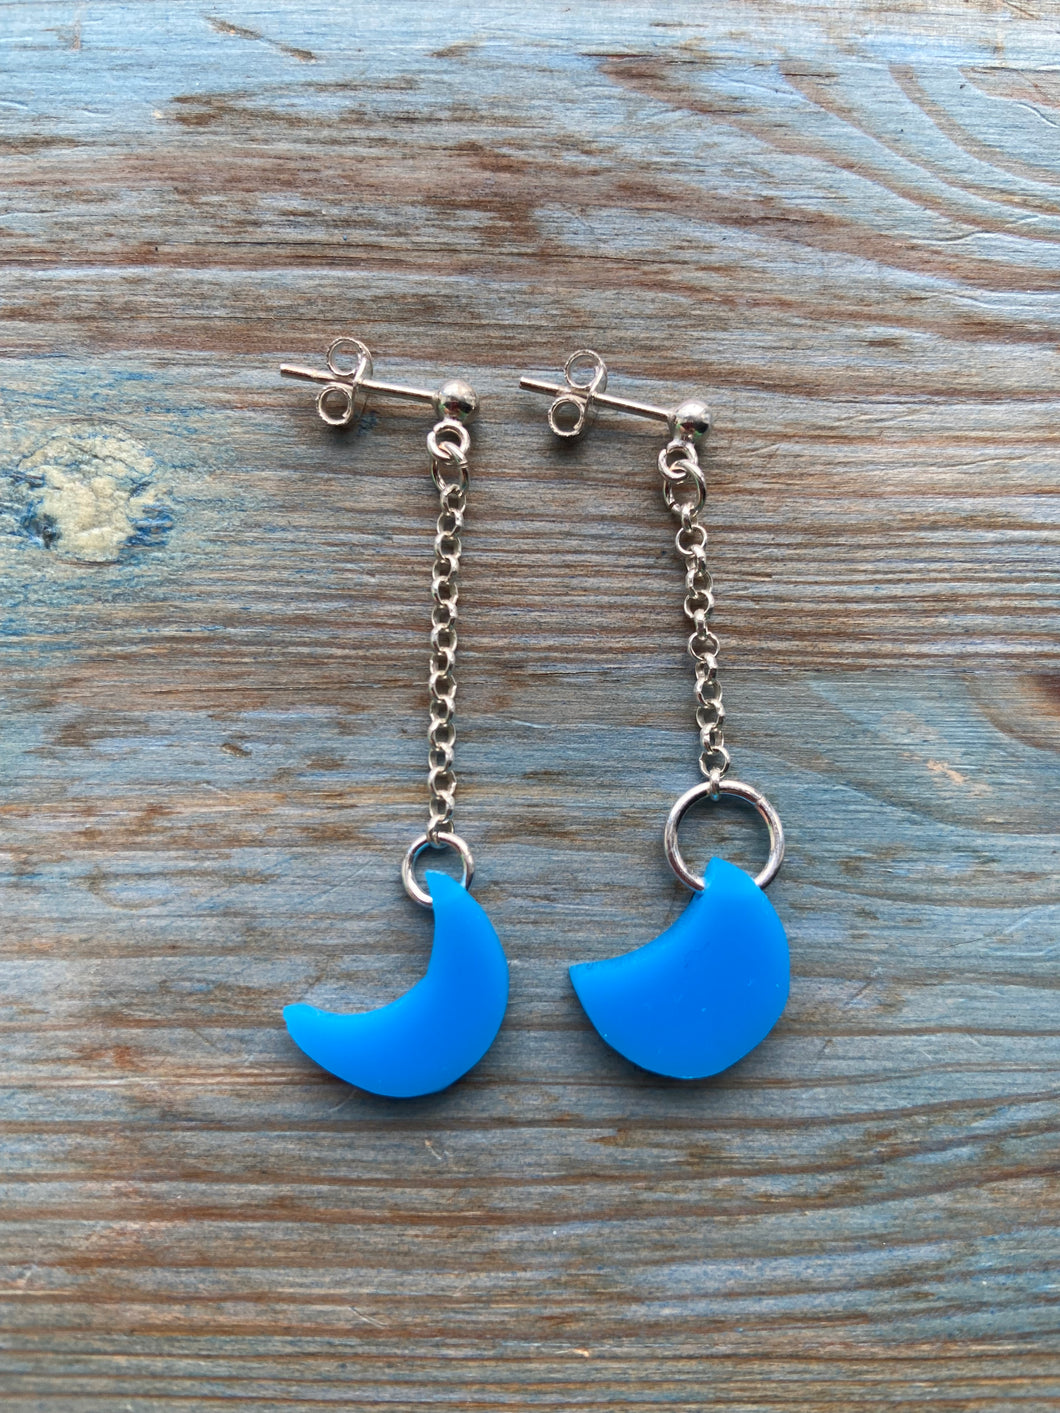 Blue Moon earrings